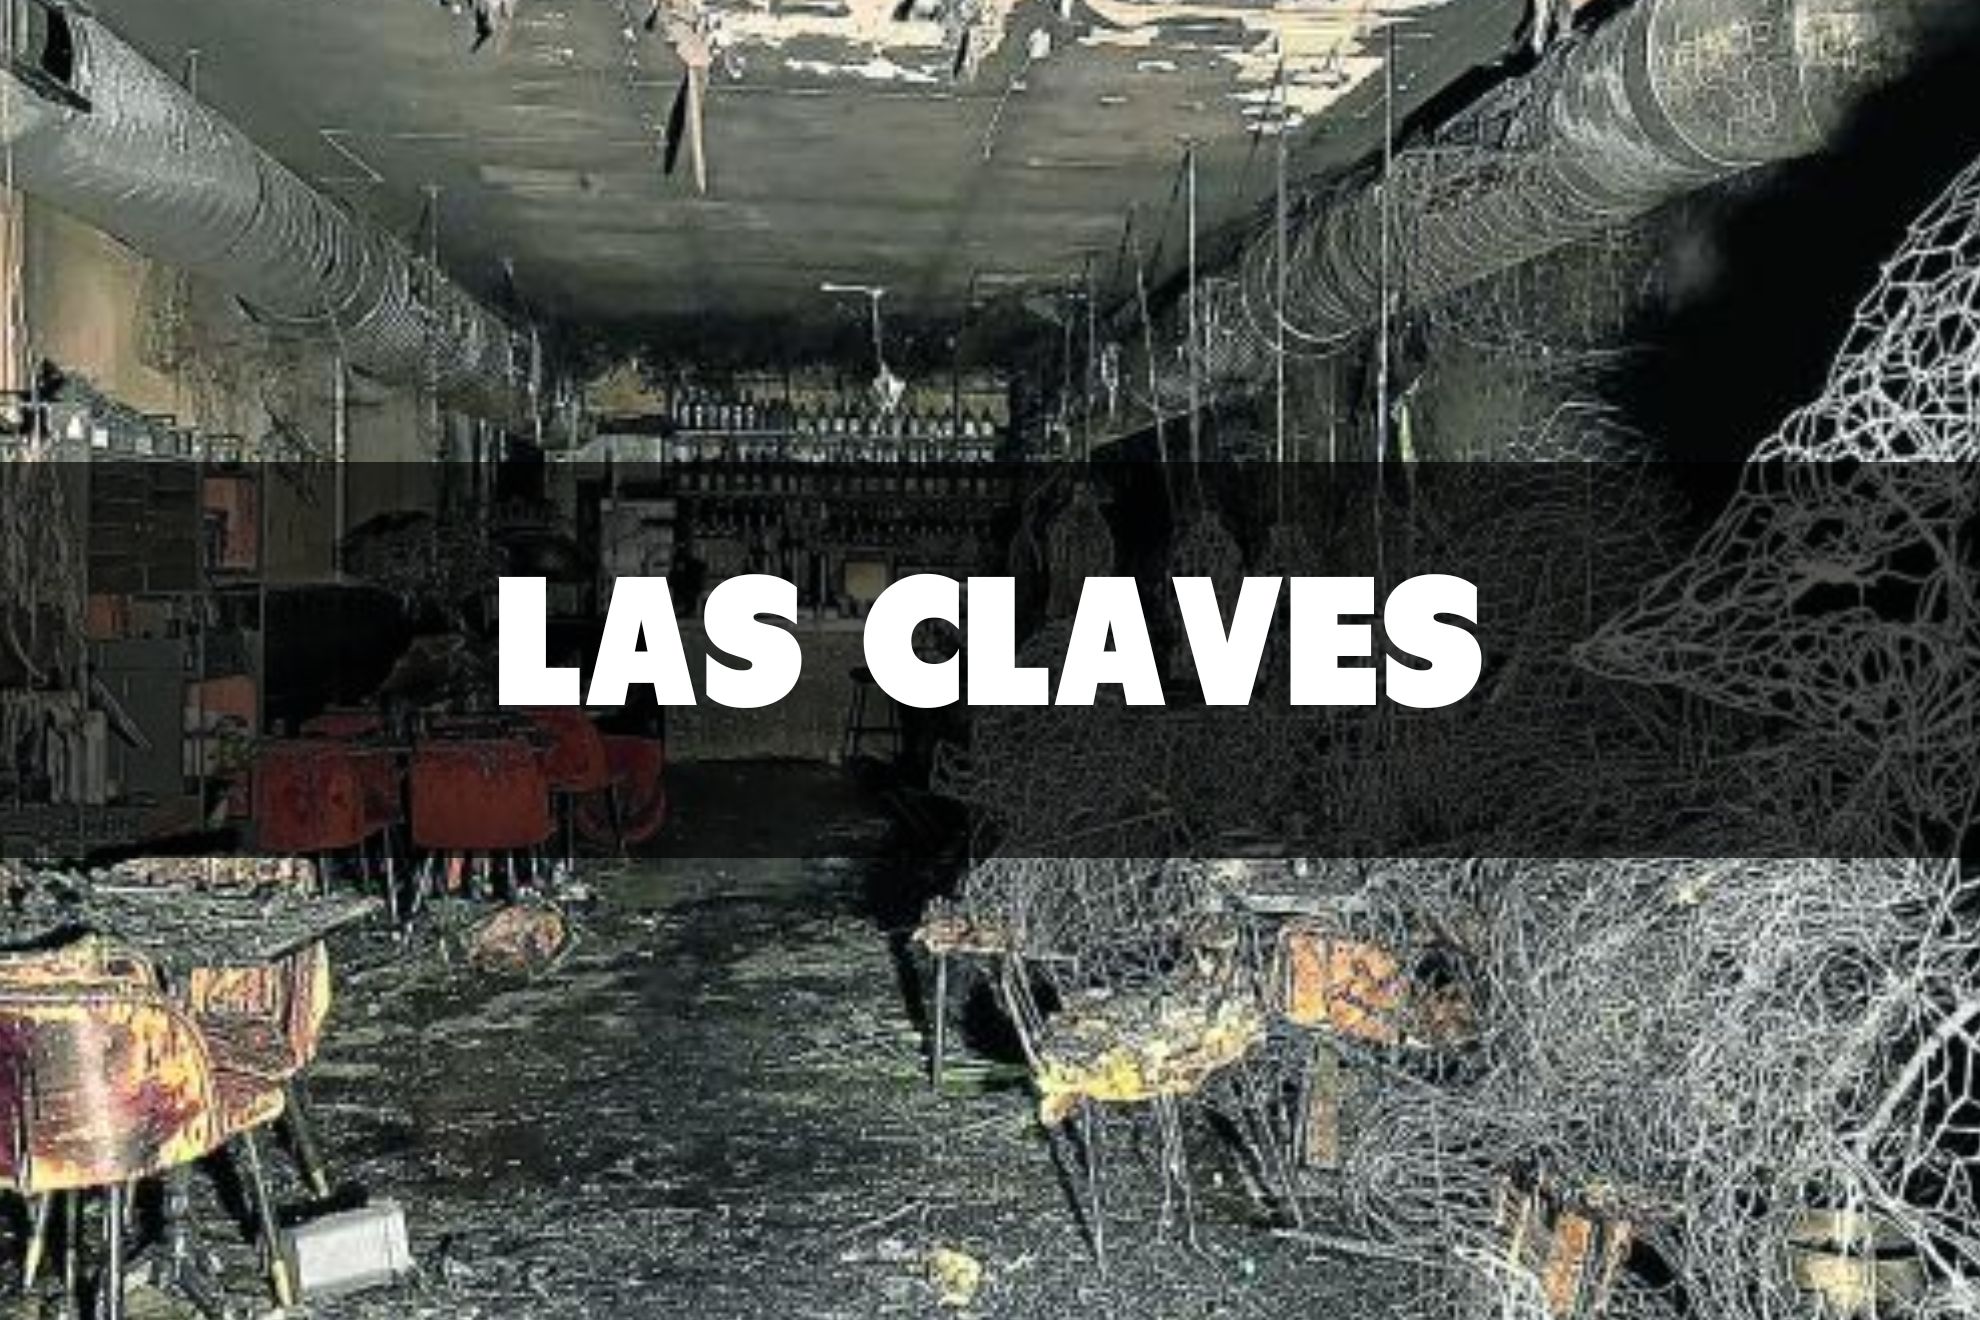 Las claves del incendio con dos fallecidos del restaurante de Madrid: licencia de cocina desde 1997